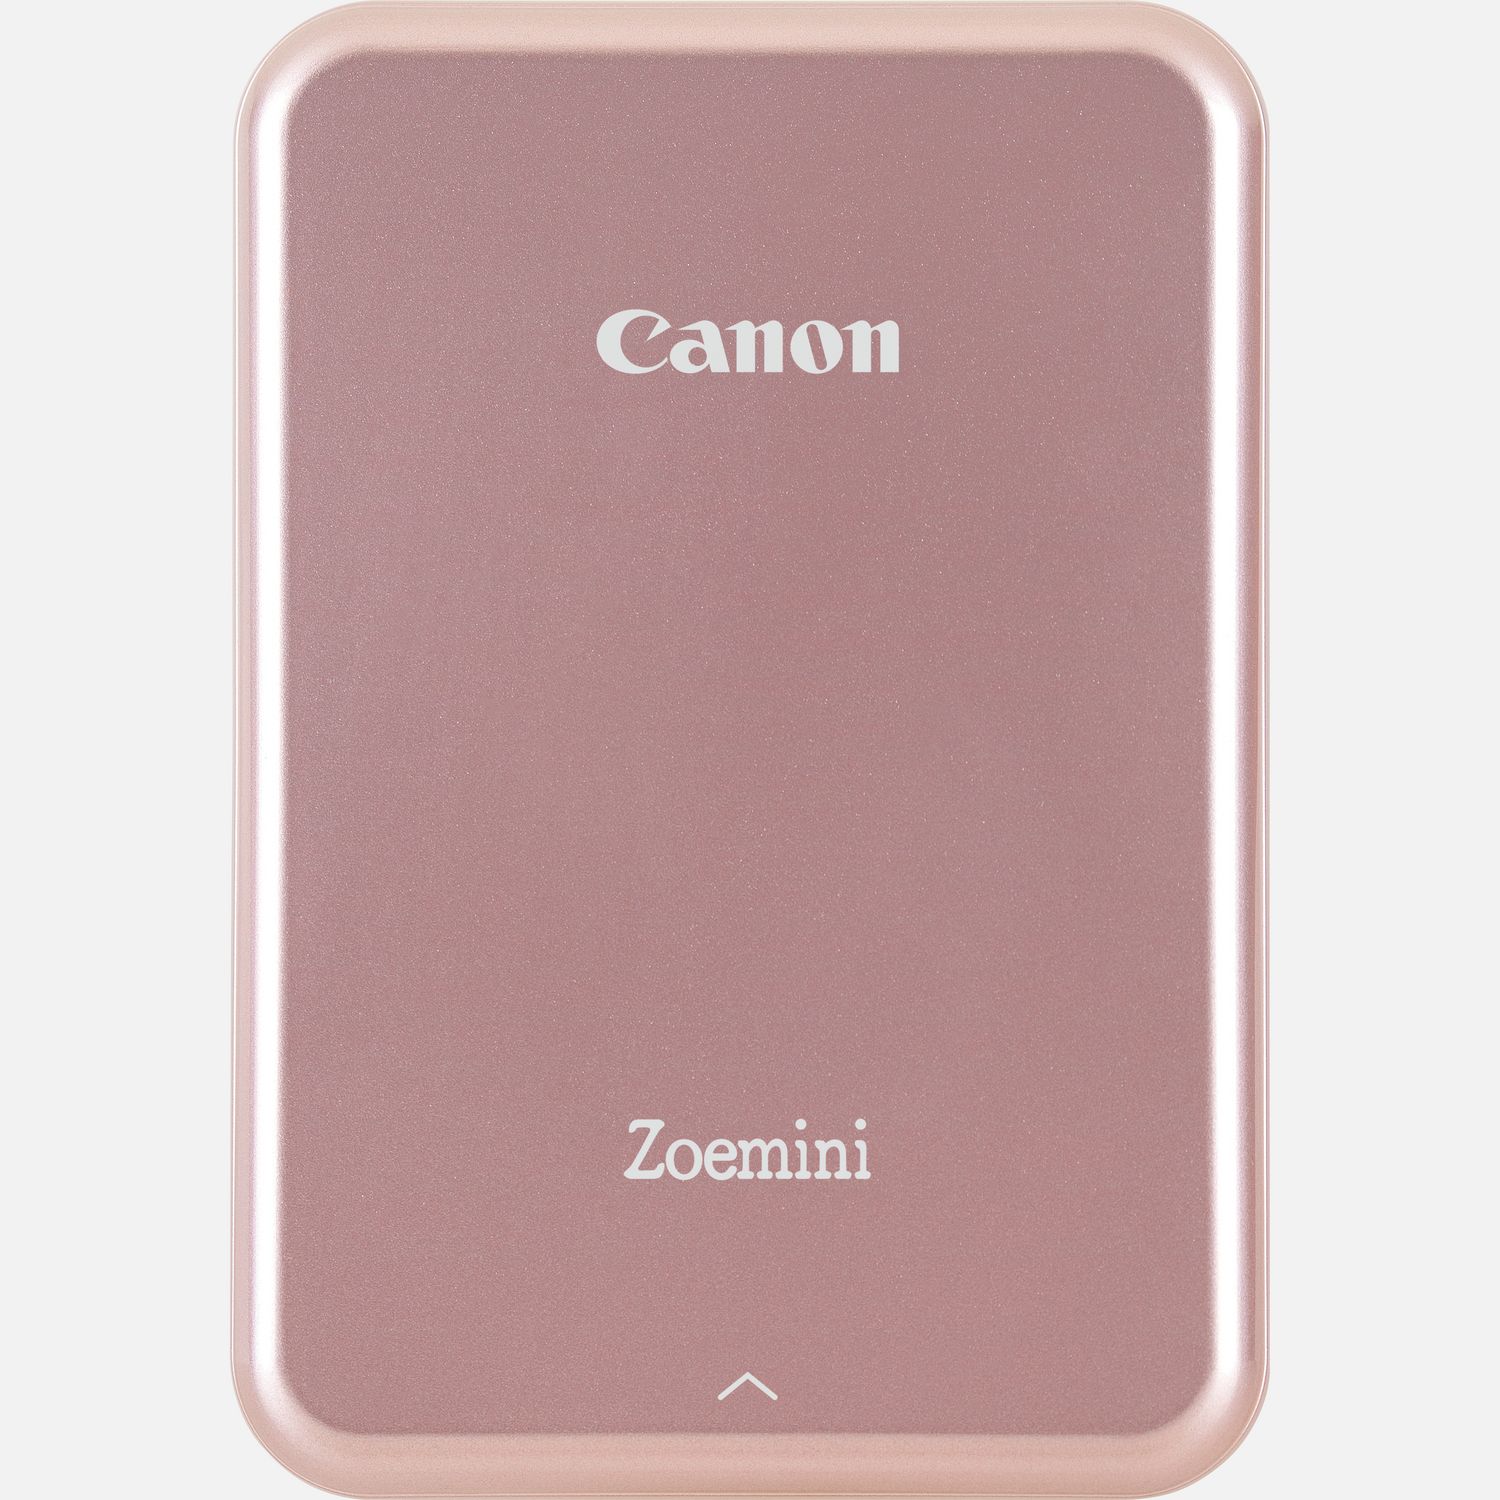 Stampante fotografica portatile Canon Zoemini, oro rosa